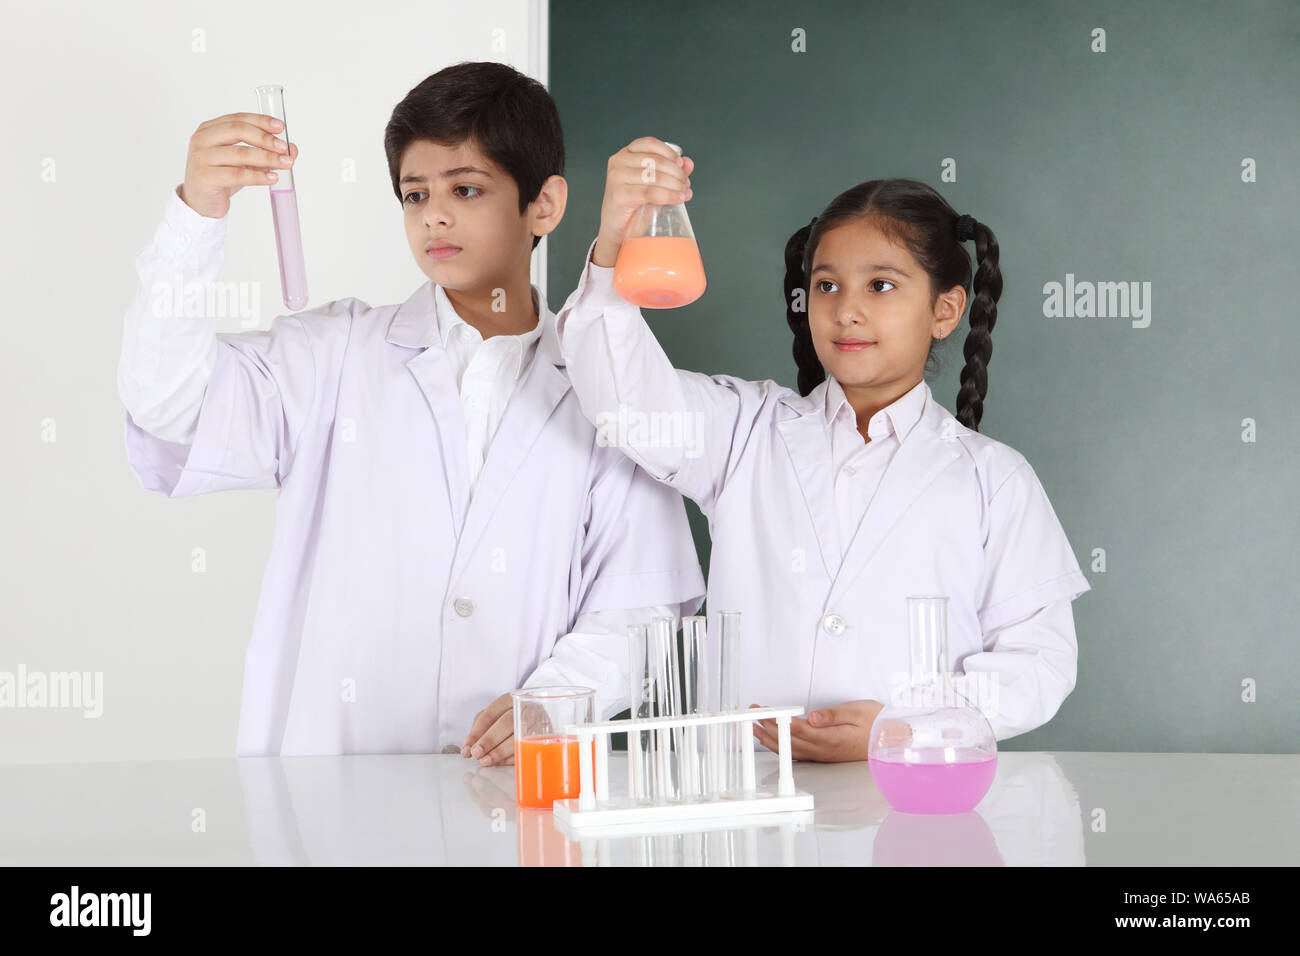 Los estudiantes de la escuela experimentan en un laboratorio de química Foto de stock